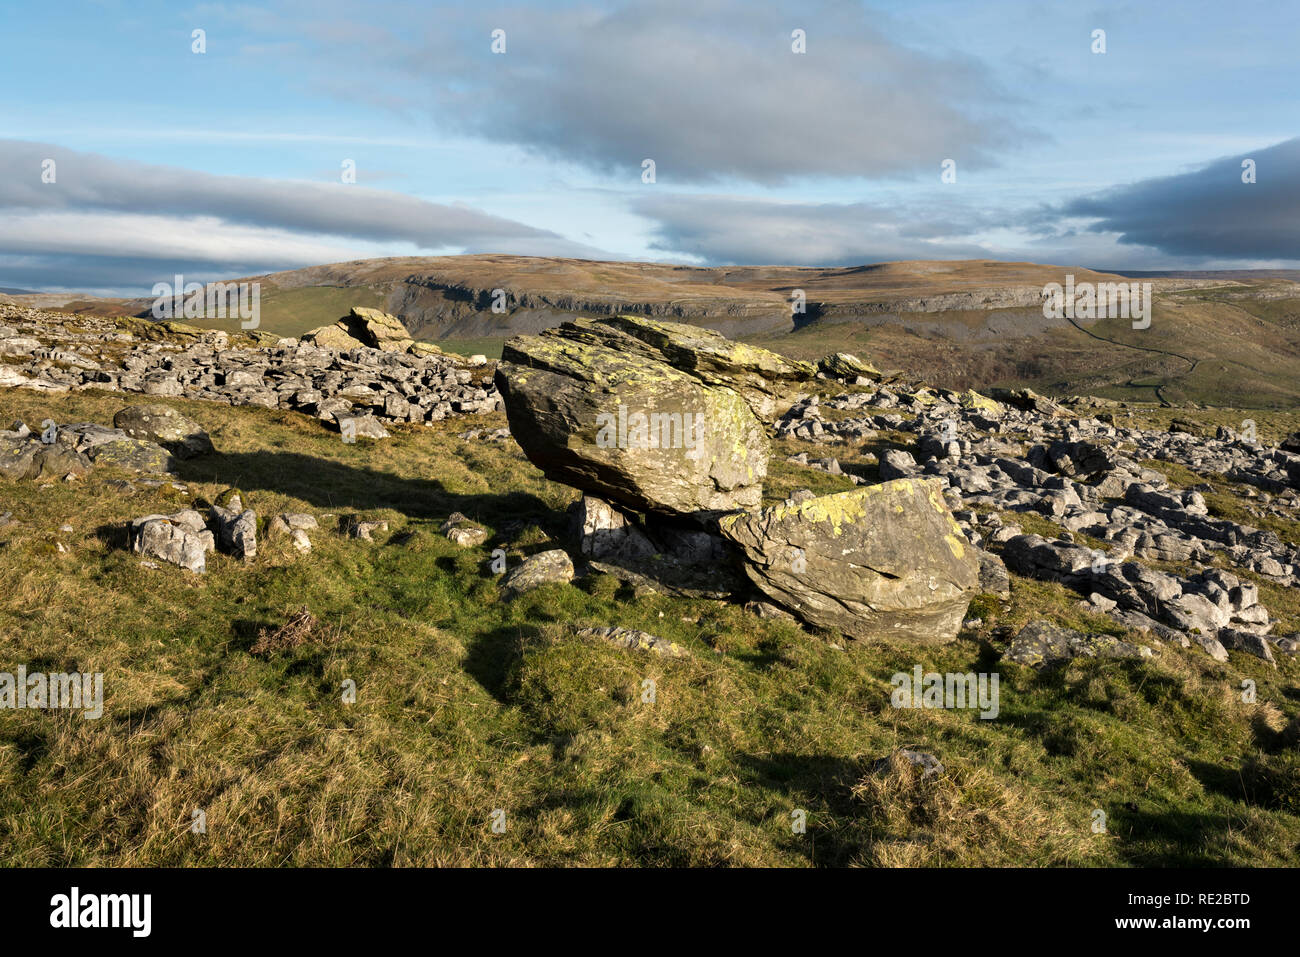 Les pierres, Norber Austwick, Yorkshire Dales National Park. Les rochers jonchent le plateau sont des blocs erratiques glaciaires. Banque D'Images